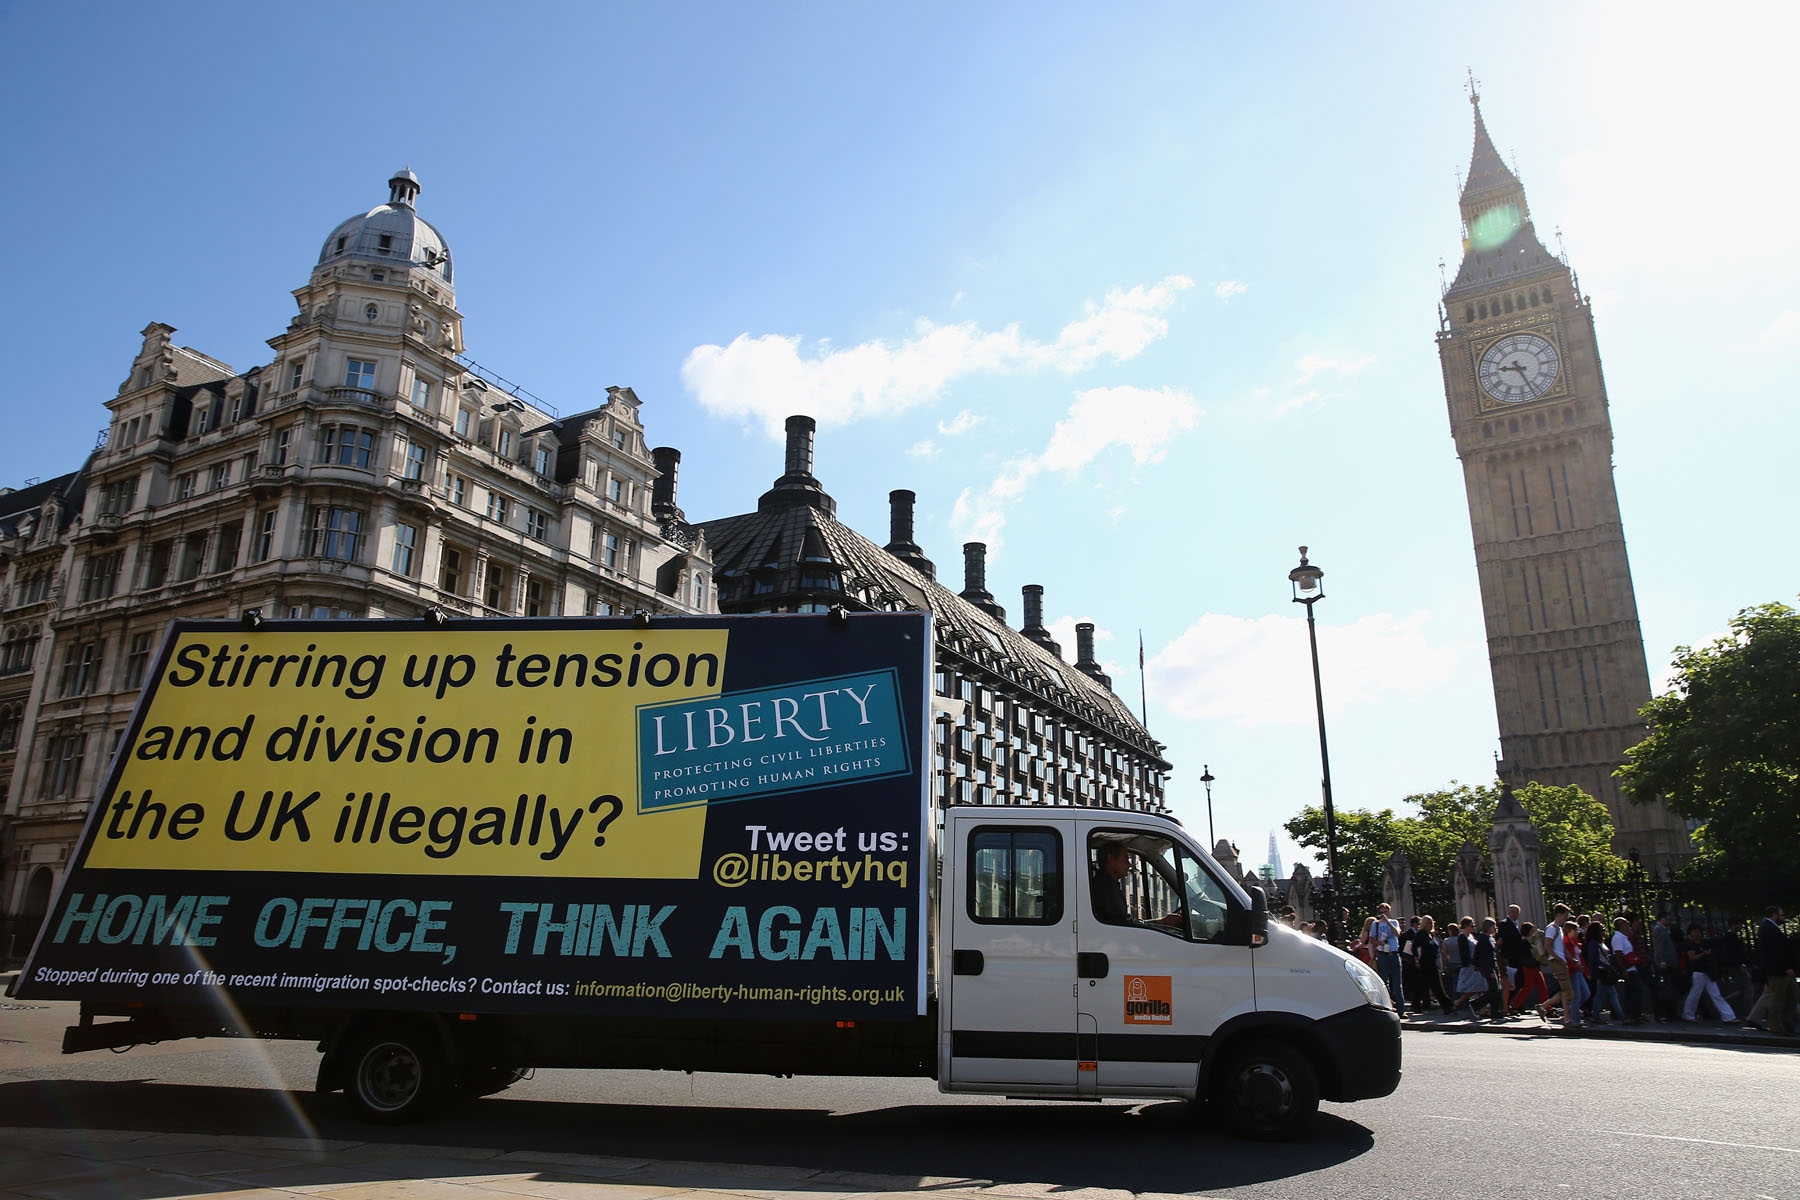 Camioneta con mensajes contra la inmigración ilegal en Inglaterra circuló ayer en Londres.